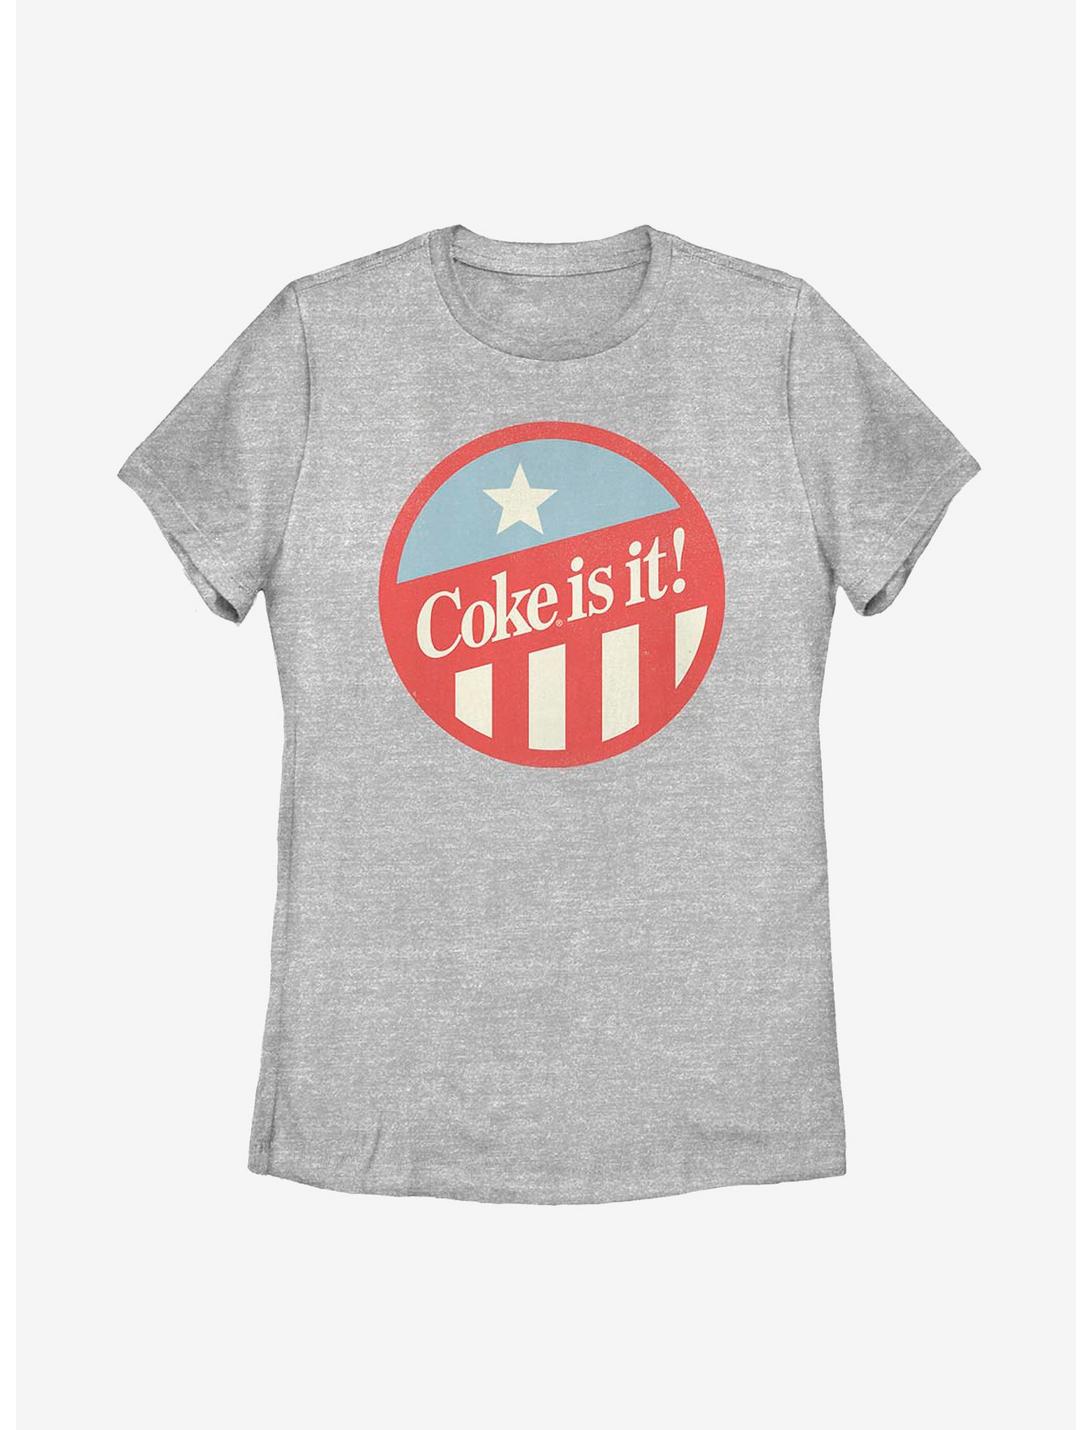 Coca-Cola Coke It Is! Womens T-Shirt, ATH HTR, hi-res